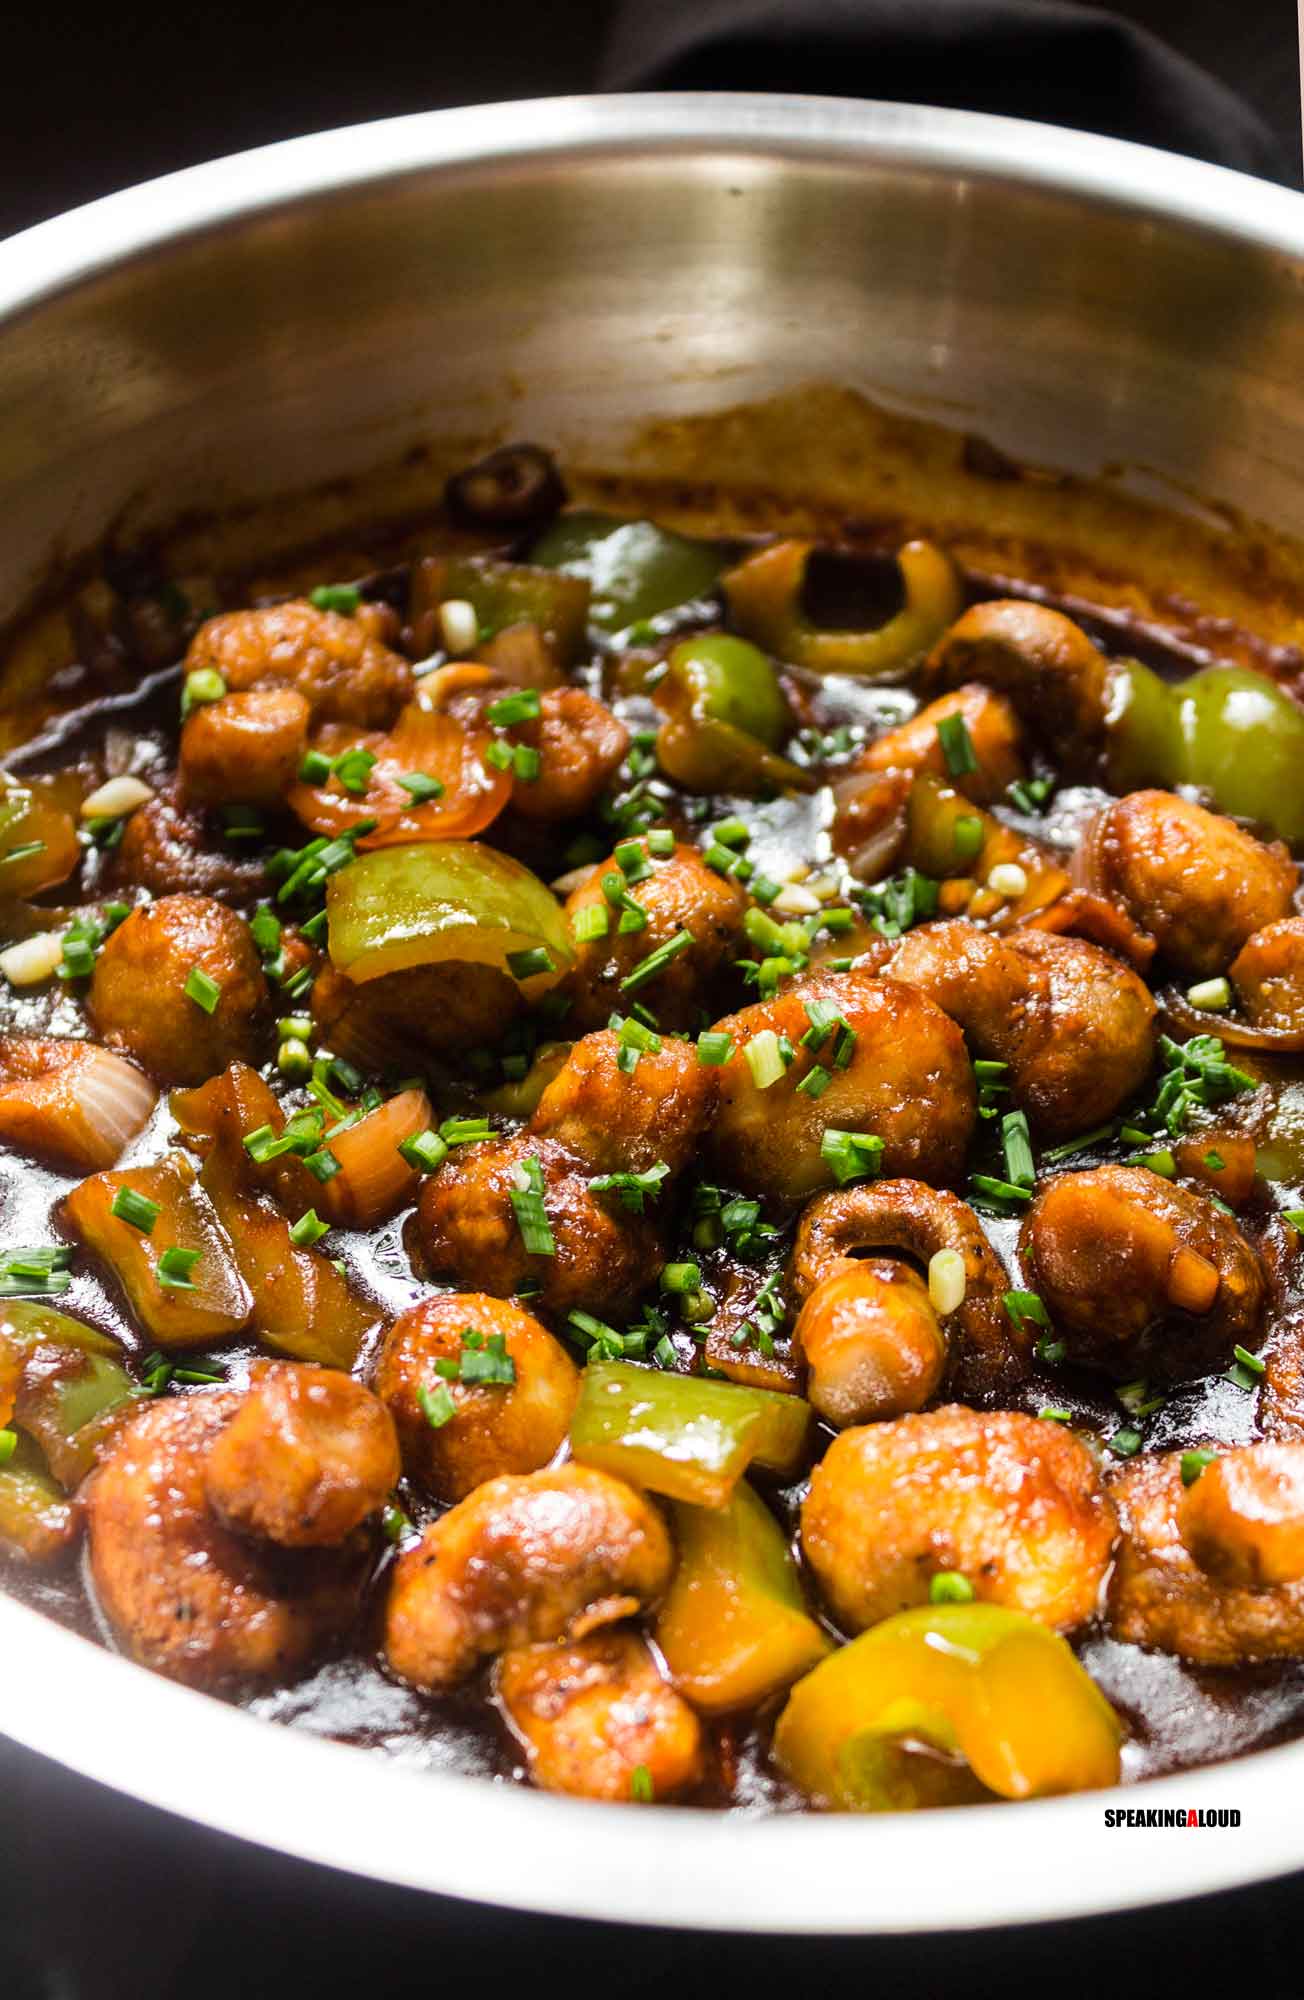 Chilli Mushroom in Gravy Recipe - Easy Mushroom Recipes